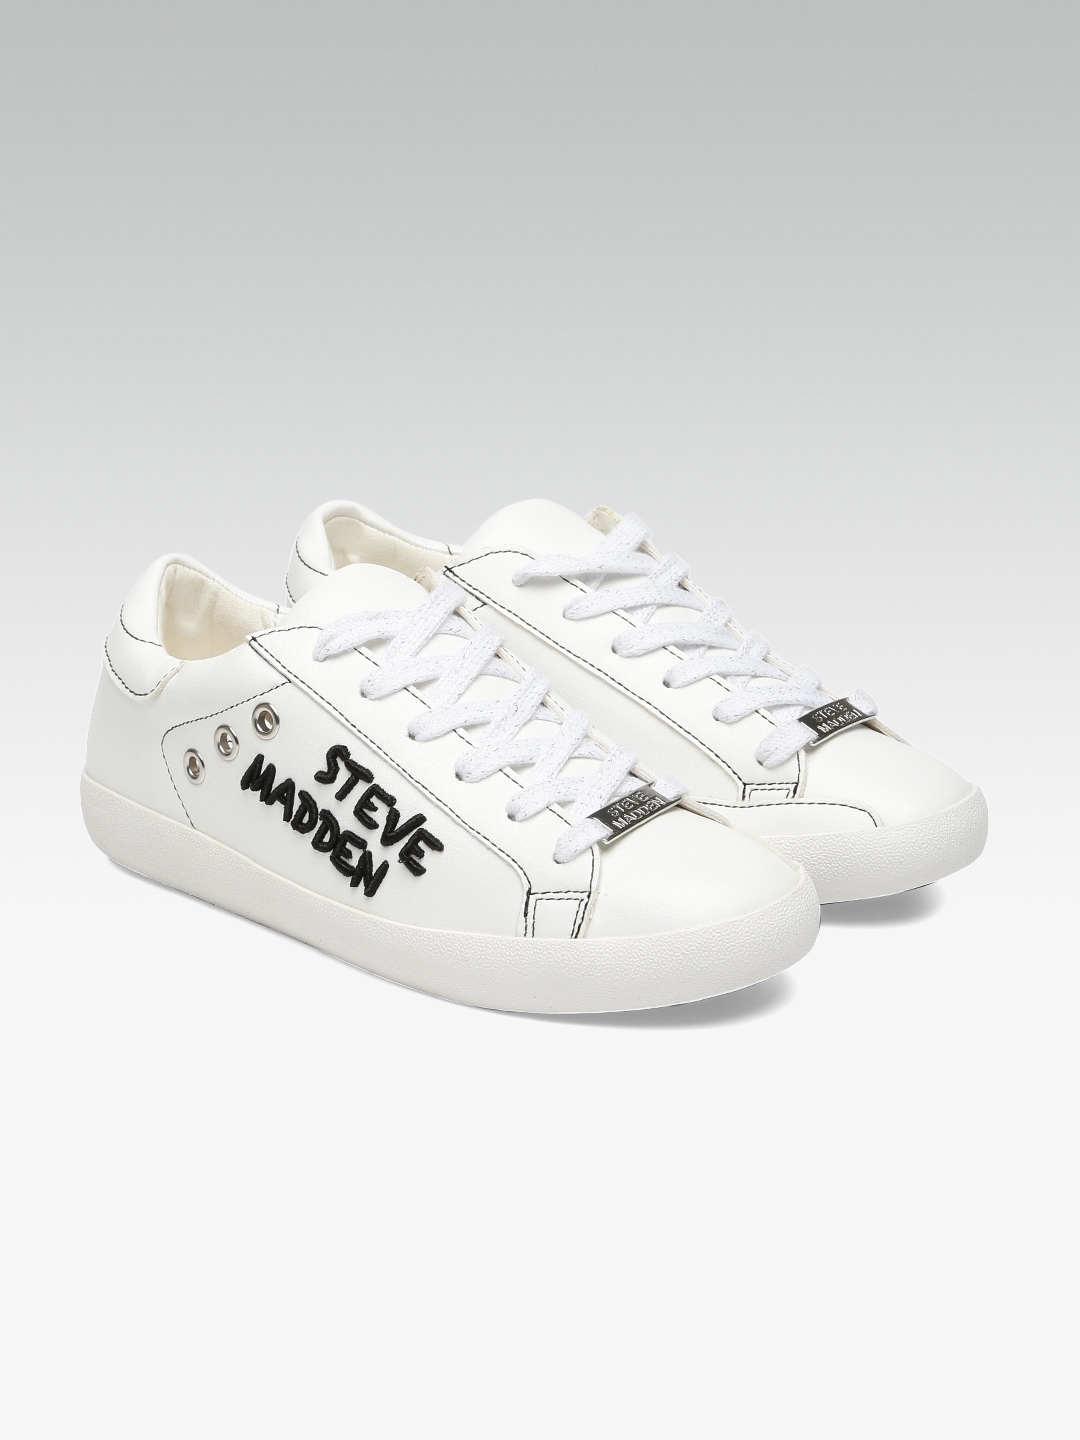 steve madden white sneakers women